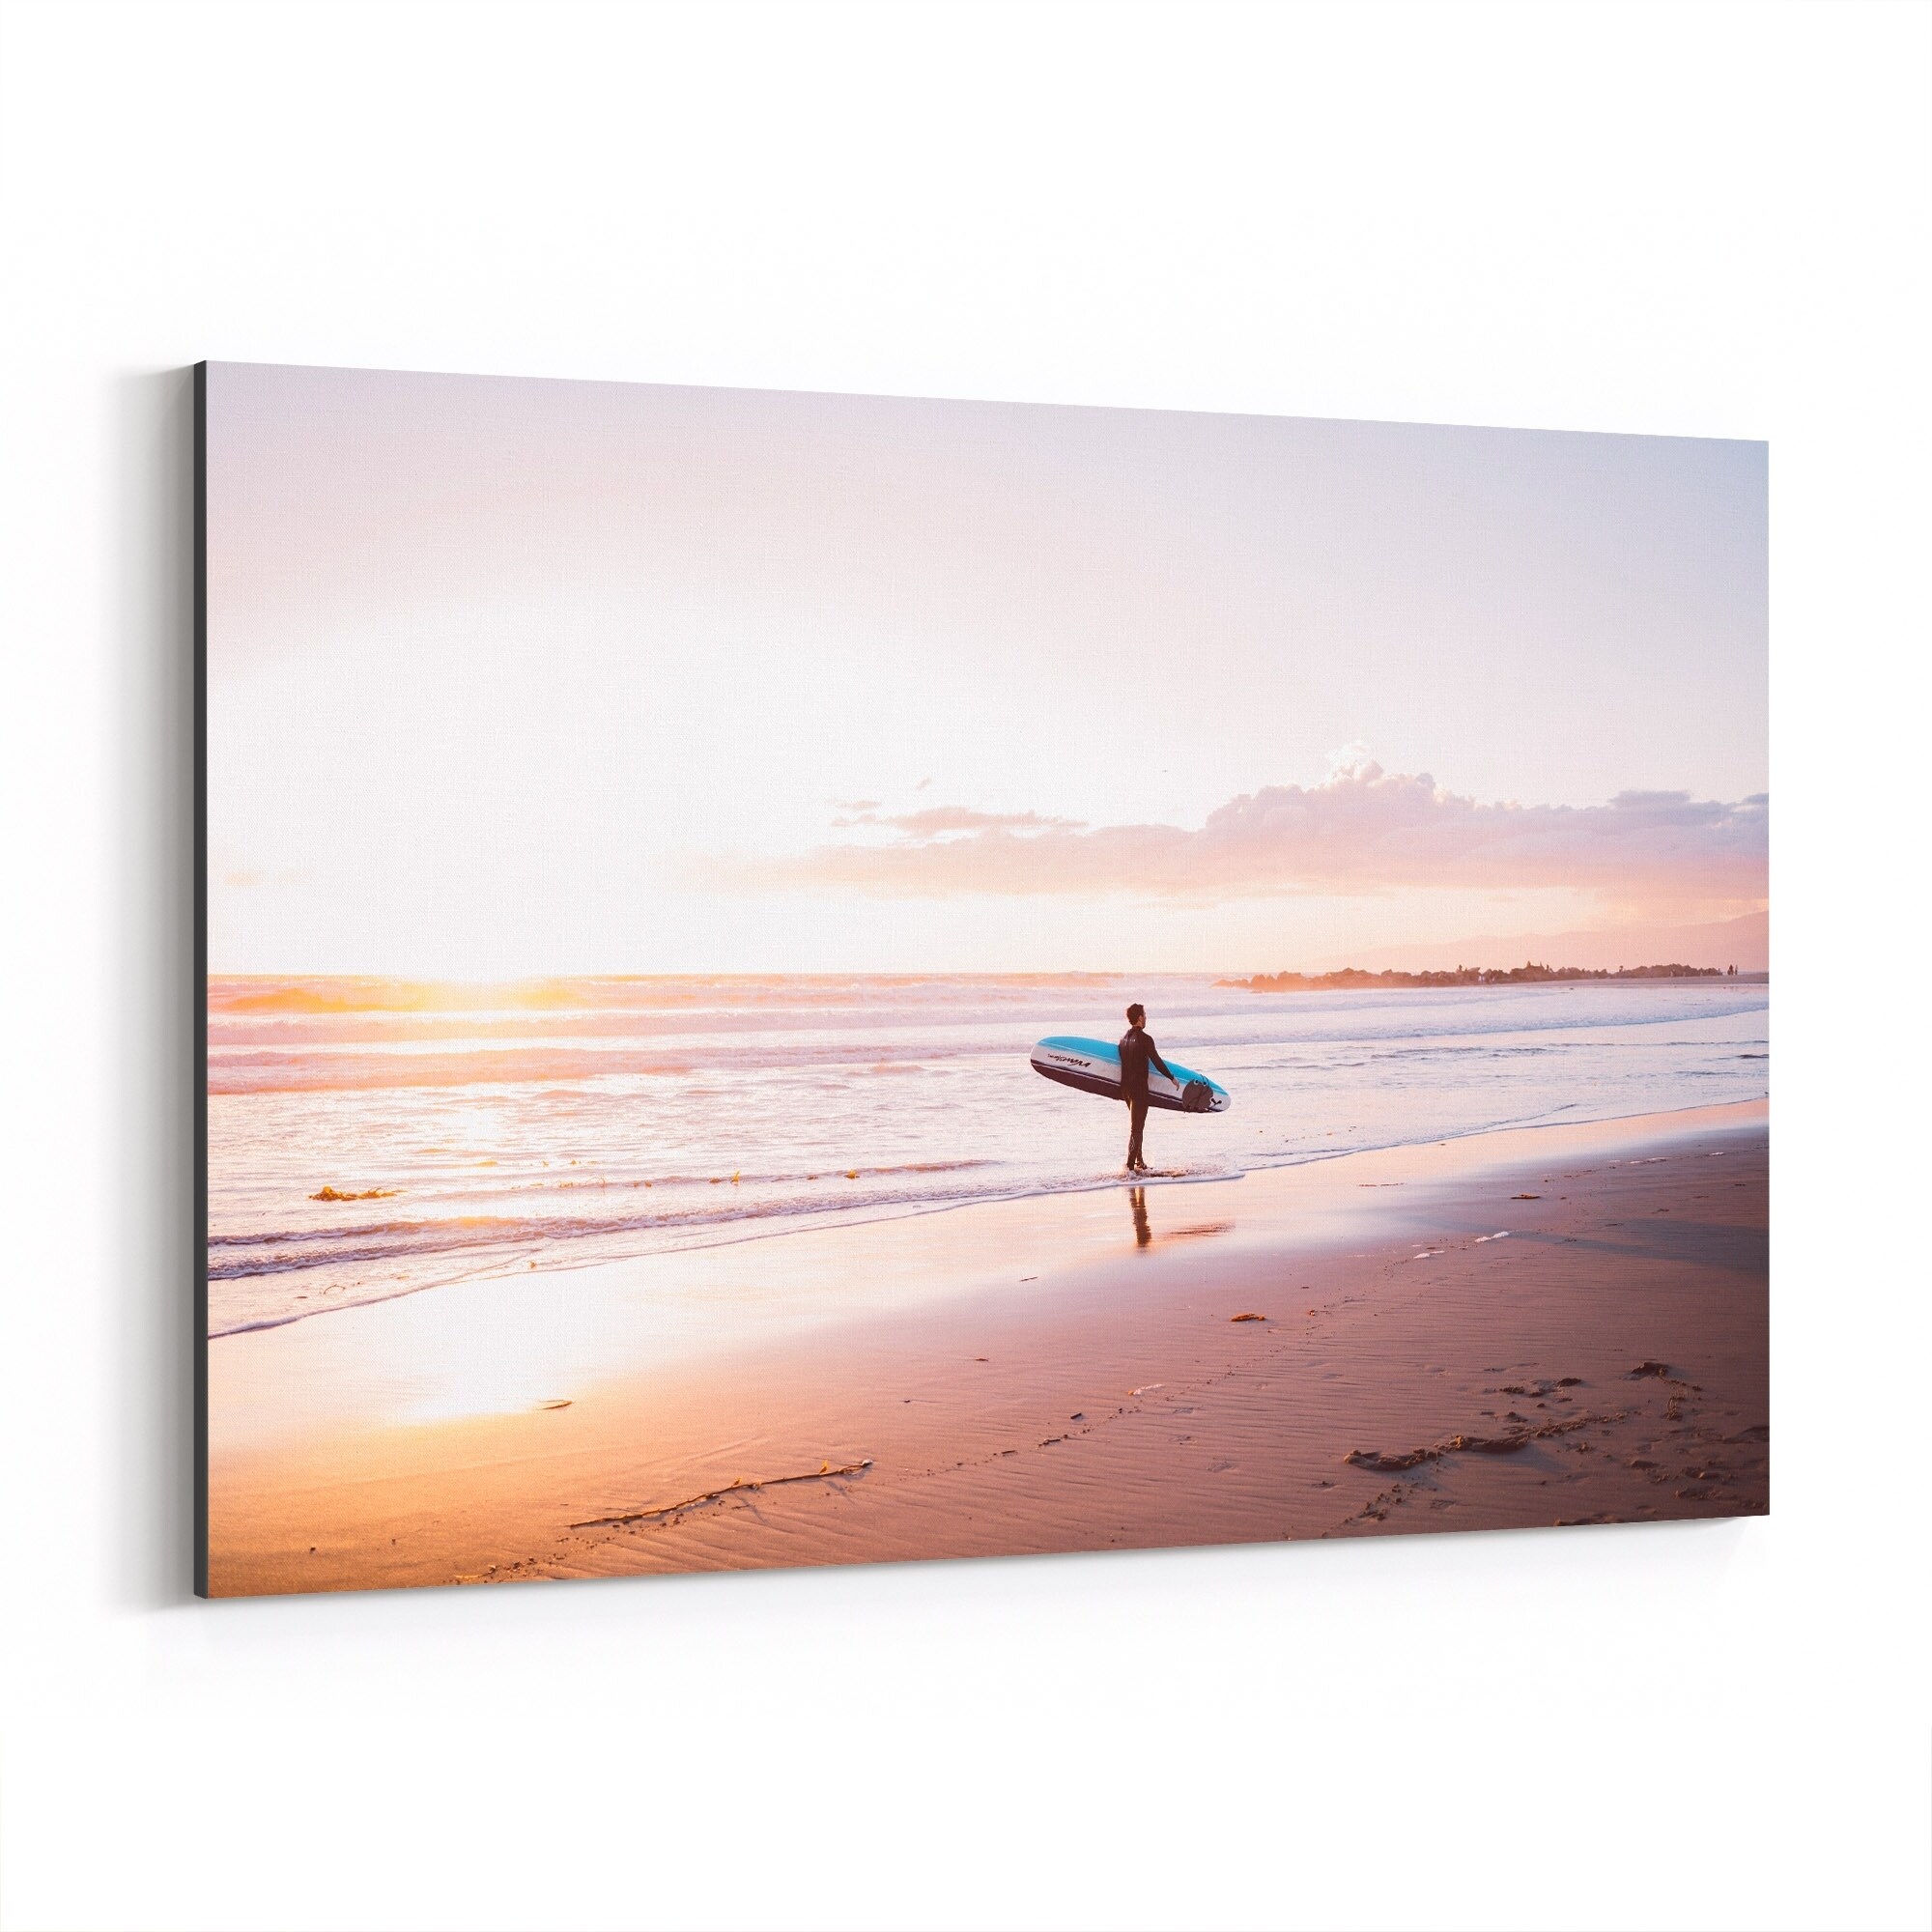 Shop Noir Gallery Venice Beach Surfing Waves Ocean Canvas Wall Art Print Overstock 27441596